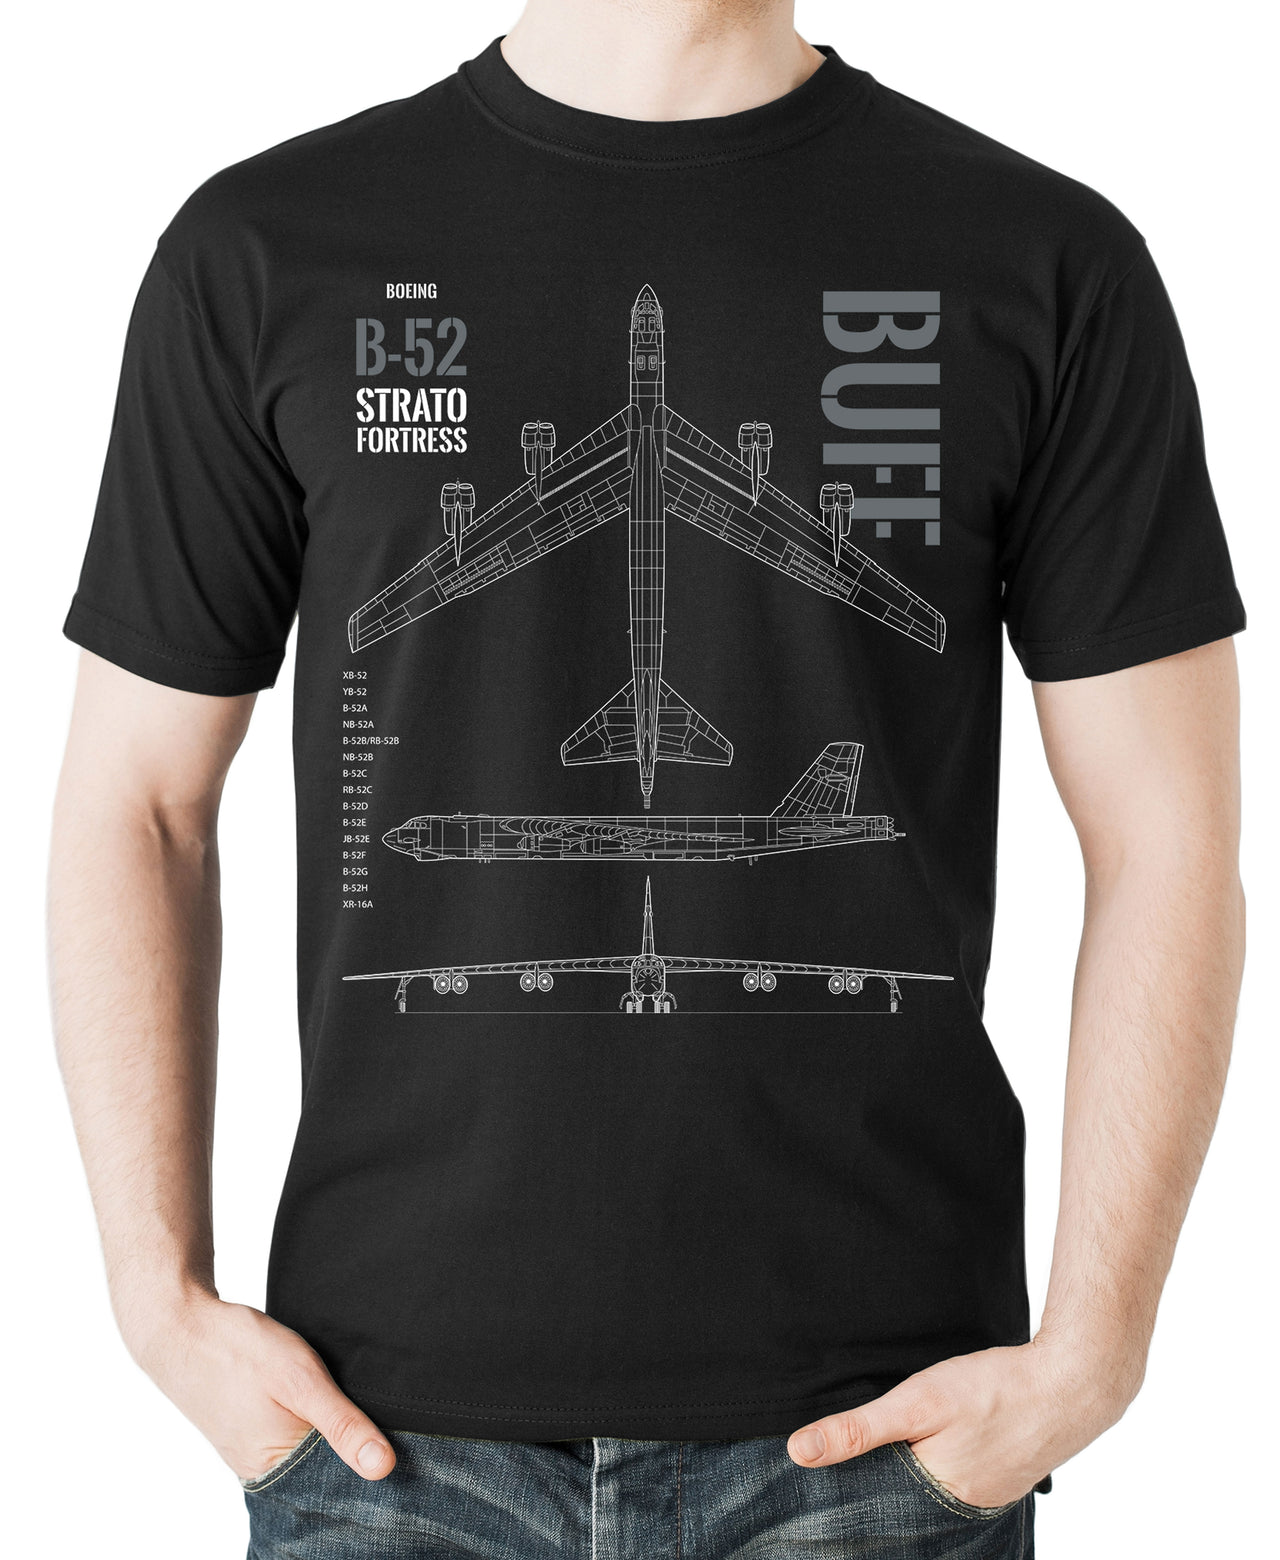 B-52 Stratofortress - T-shirt